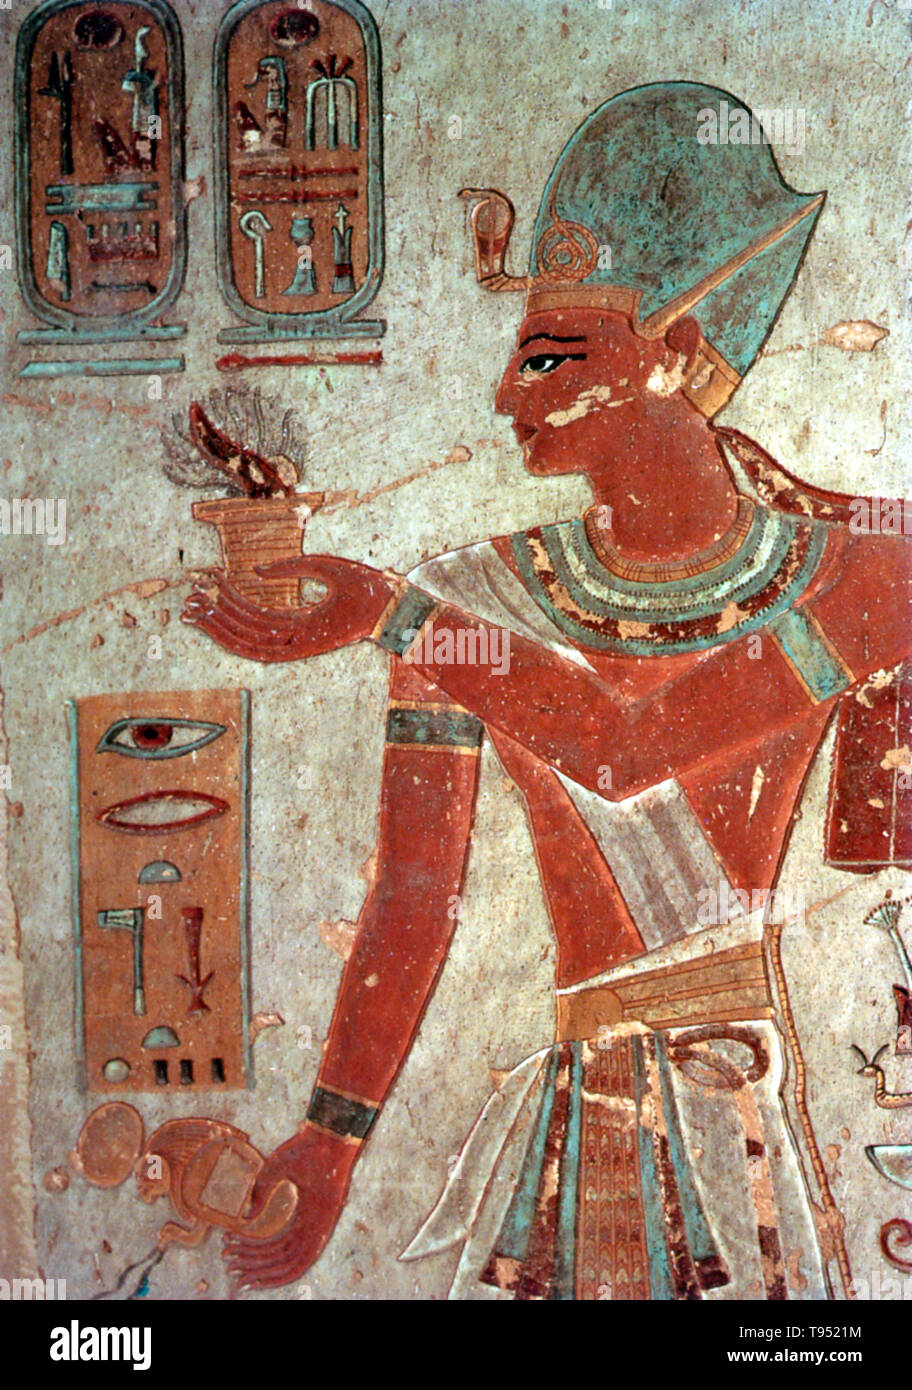 Malte Entlastung von Ramses III mit Weihrauch, Tal der Könige. Usimare Ramses III. war der zweite Pharao der 20. Dynastie und gilt als der letzte, Neues Reich König werden in einem wesentlichen Autorität über Ägypten auszuüben. Seine lange Regierungszeit sah der Niedergang der ägyptischen politischen und wirtschaftlichen Macht, zu einer Reihe von Invasionen und internen ökonomischen Problemen verbunden. Ramses III. war der Sohn von Setnakhte und Königin Tiy-Merenese. Stockfoto